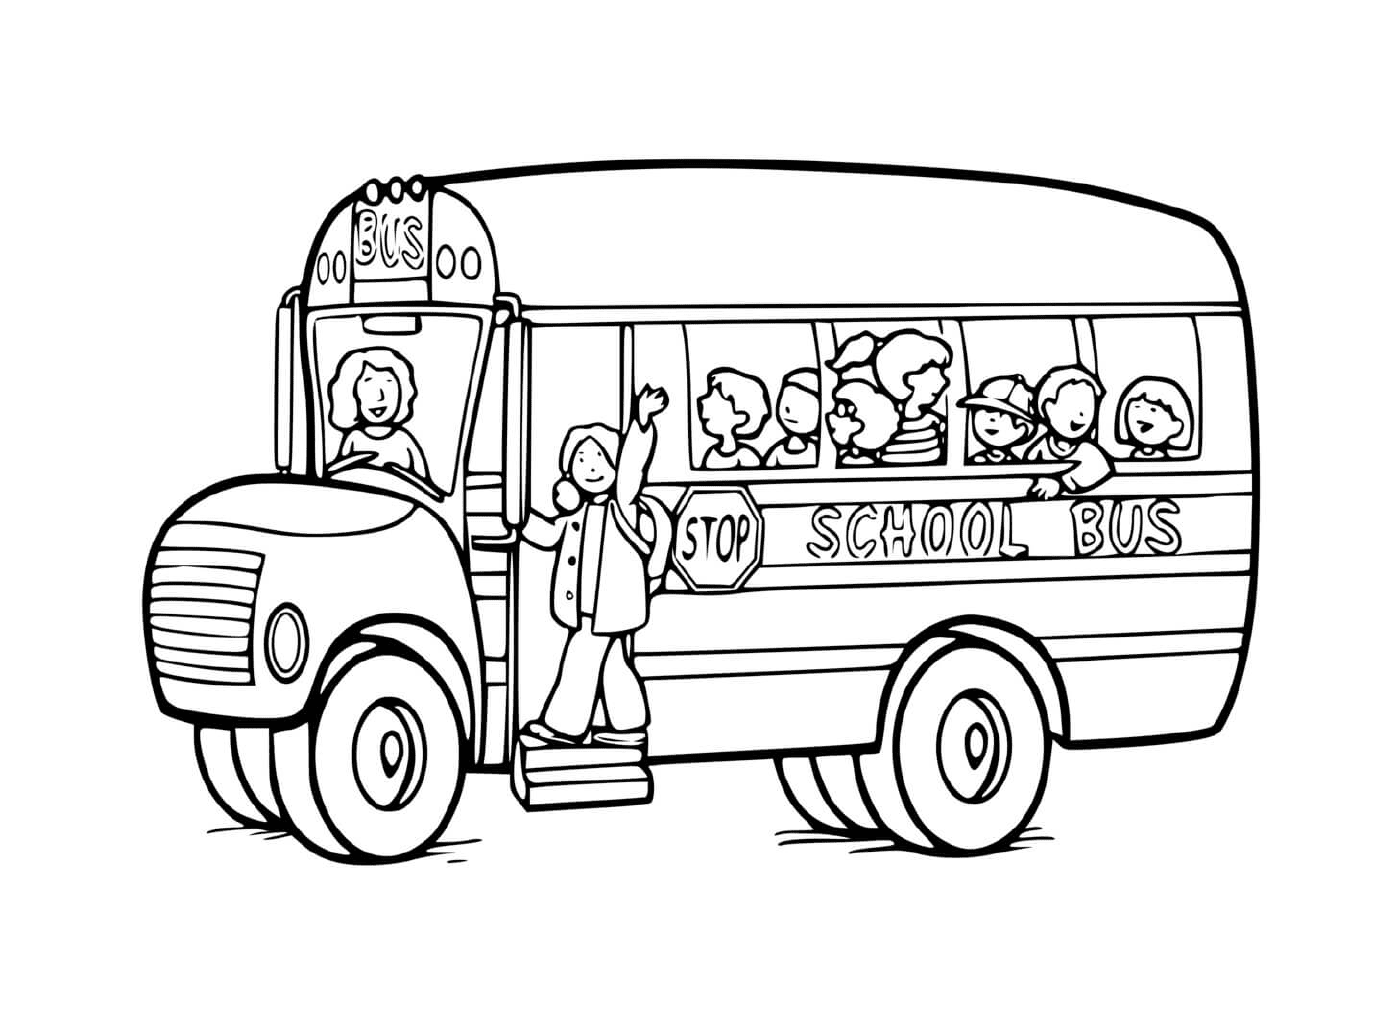  Вид школьного транспорта: автобус 